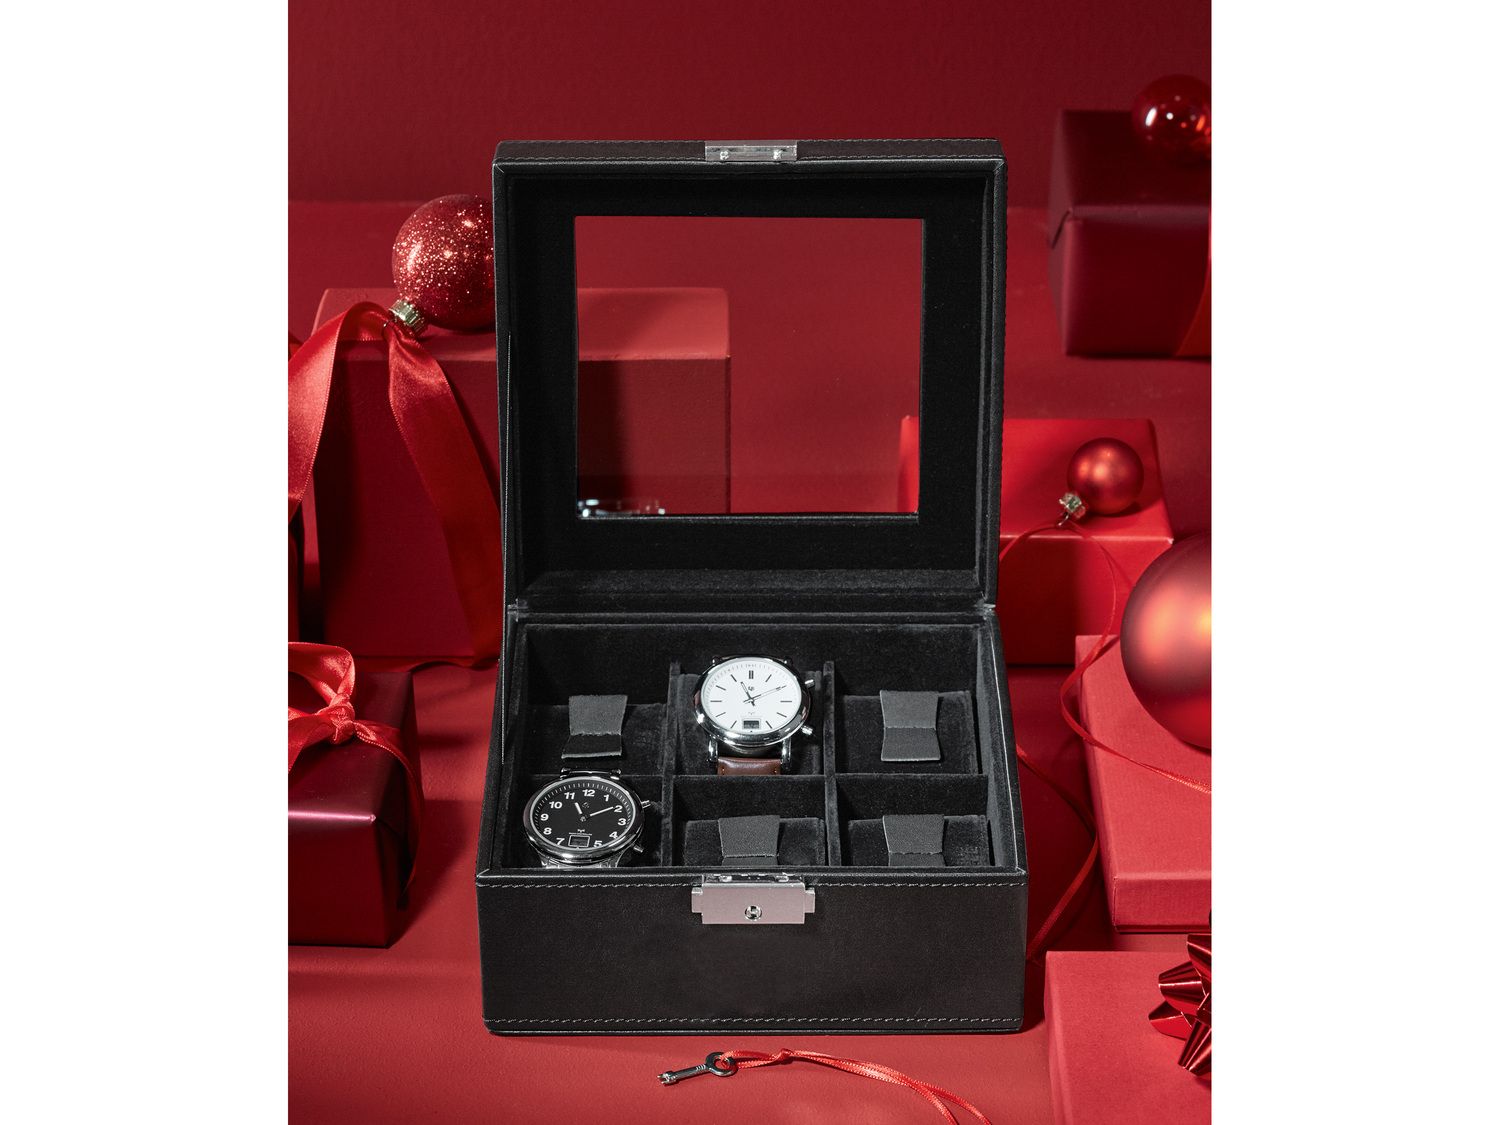 Szkatułka na zegarki Auriol, cena 49,99 PLN 
- zamykana na kluczyk
- aksamitne ...